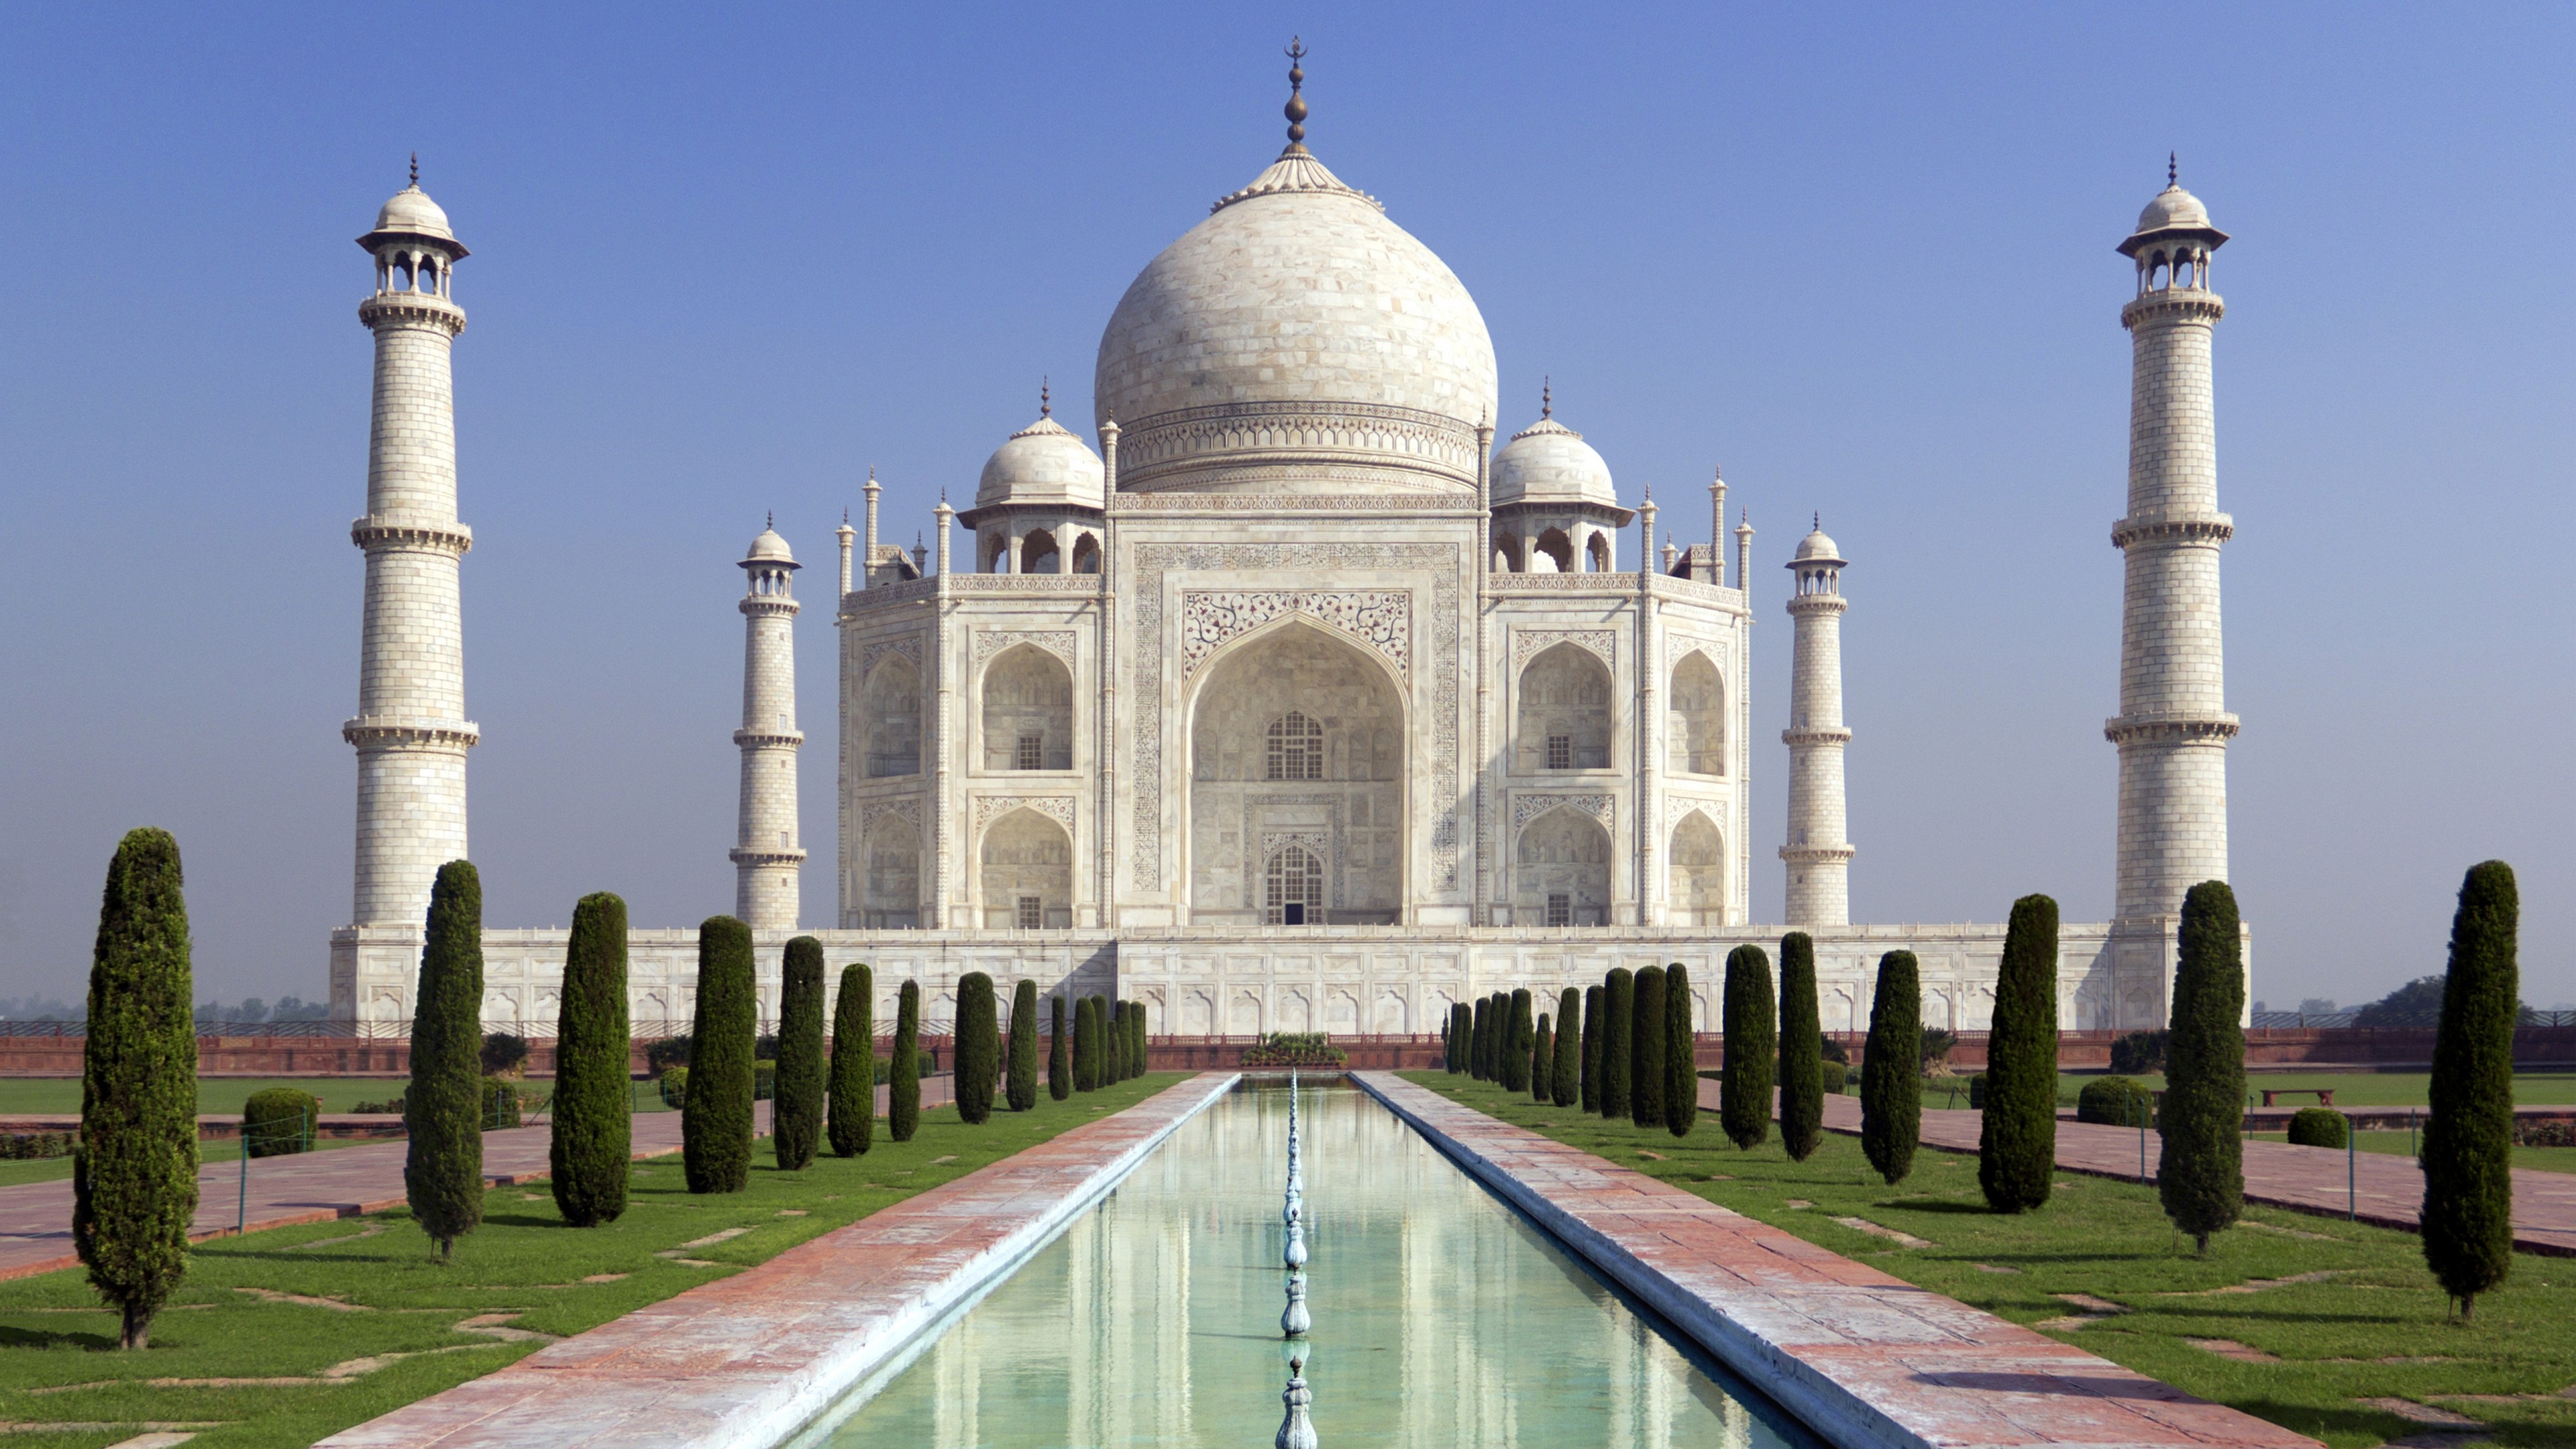 Taj Mahal Agra Indian 4k Wallpaper #4k #Agra #Indian #Mahal #Taj ...